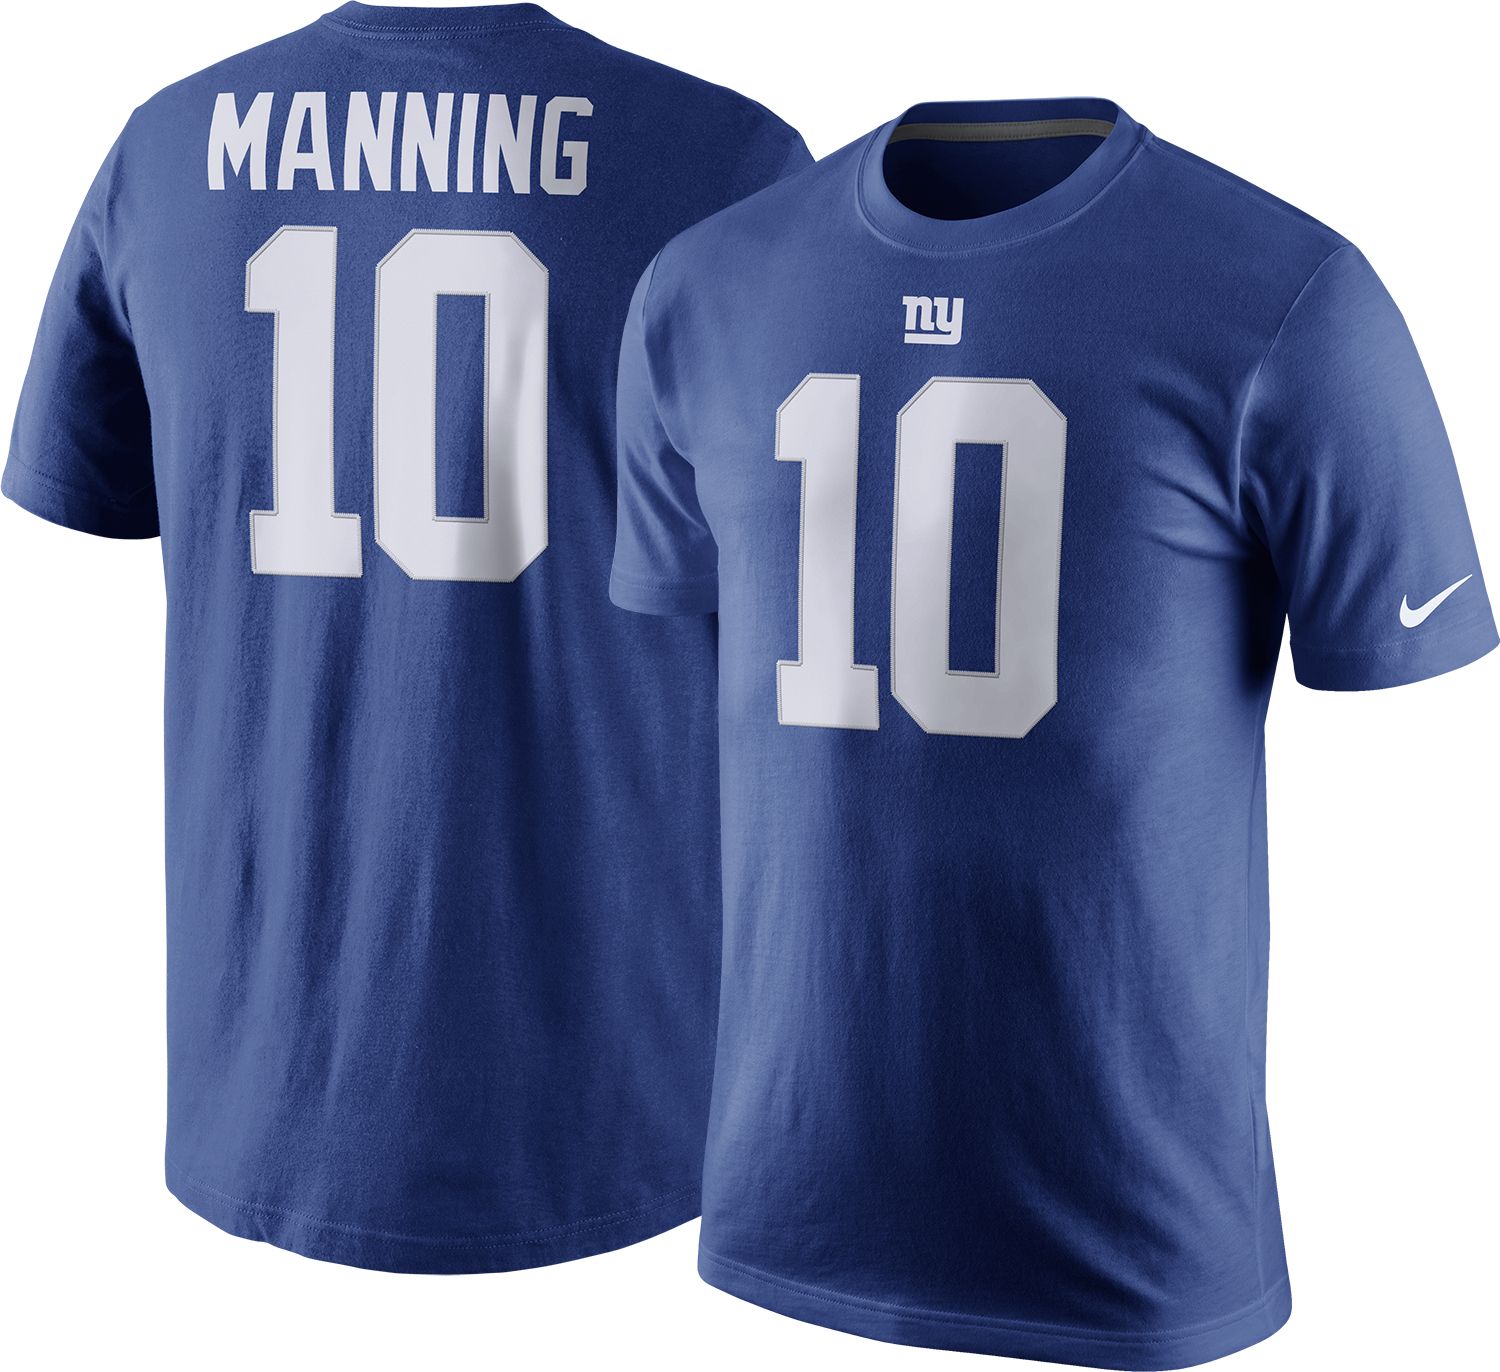 Nike Men's New York Giants Eli Manning 